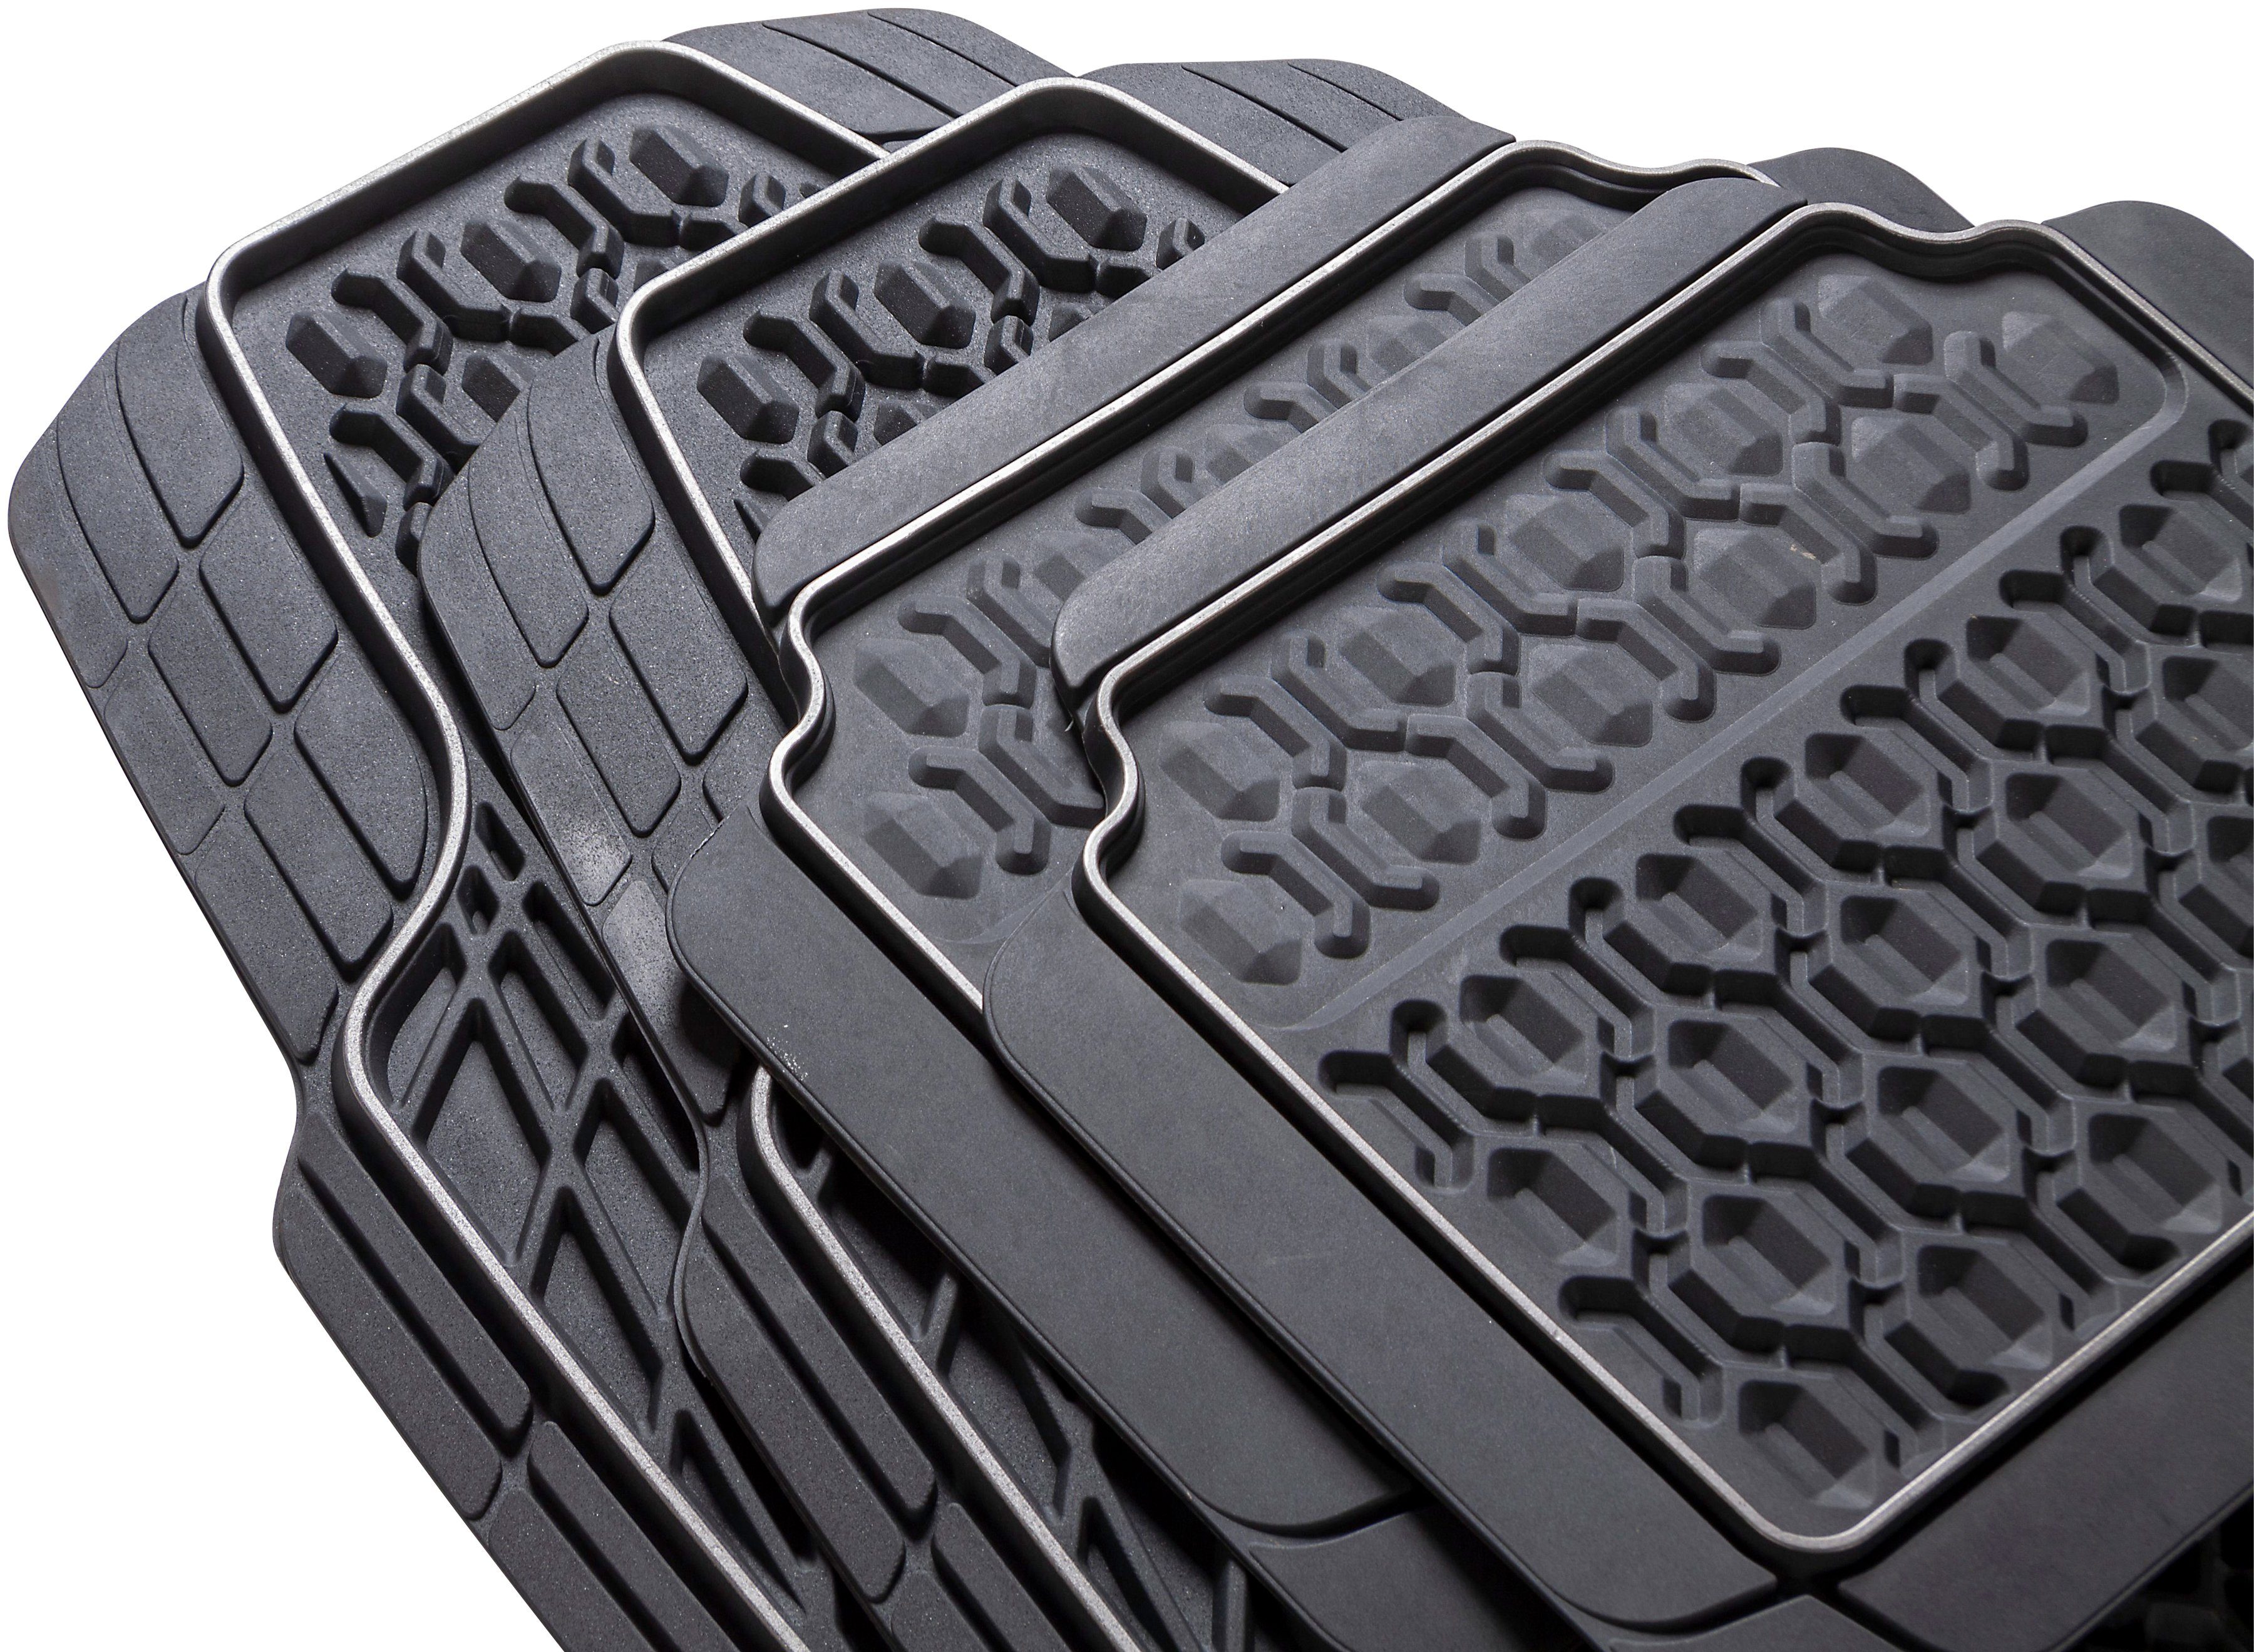 Universal-Fußmatten ausgeprägter Struktur Design optimalen bietet Schutz bei 3D Schmutz (4 in CarFashion Kombi/PKW, Tamburello und St), Nässe